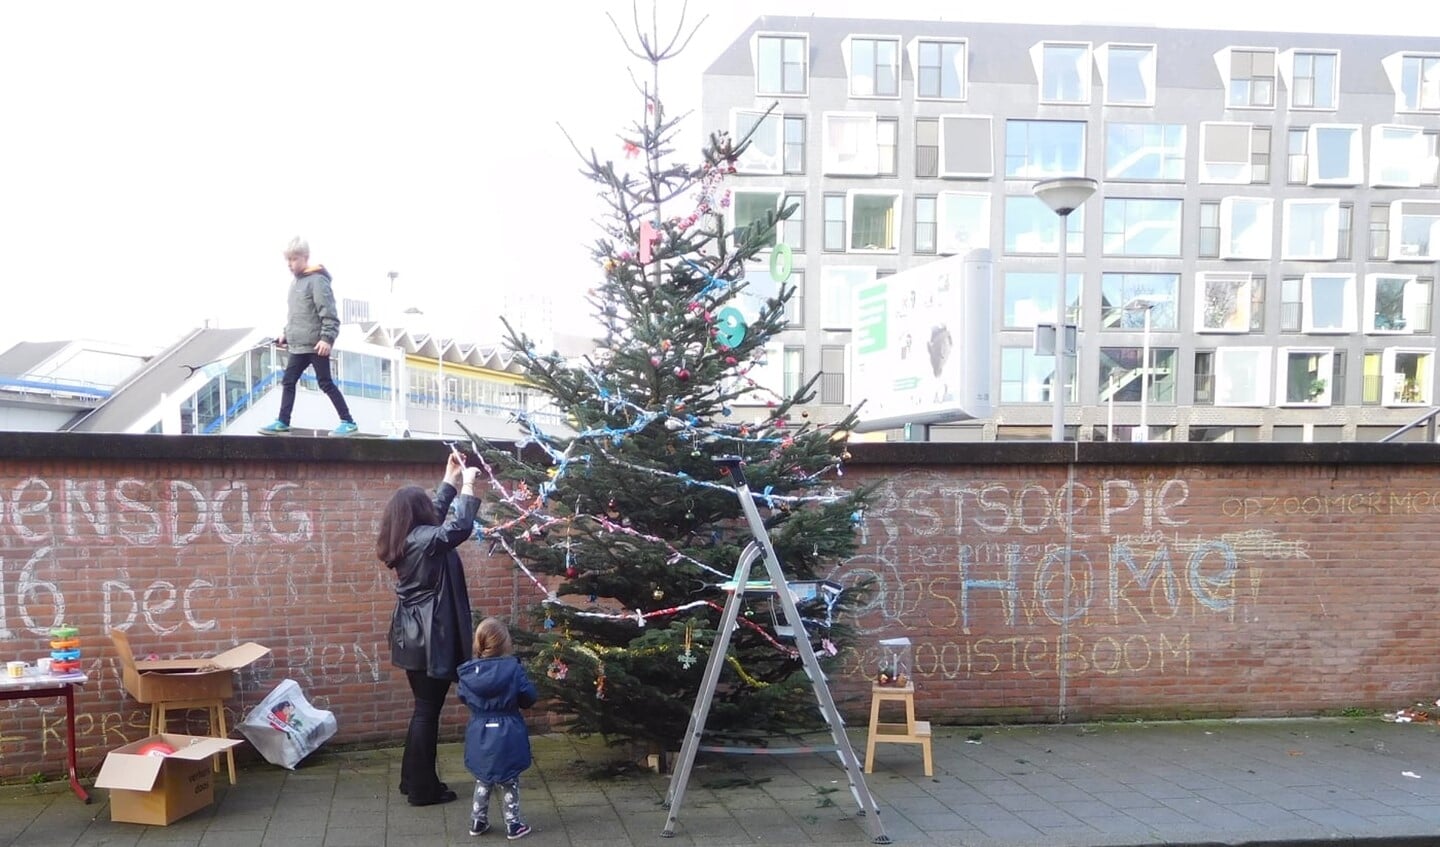 De boom wordt versierd, foto van vorig jaar. Vanaf 8 tot aan 15 december kunnen er dagelijks knuffels aan de takken worden gehangen. Daarna wordt de boom versierd. Foto's: pr